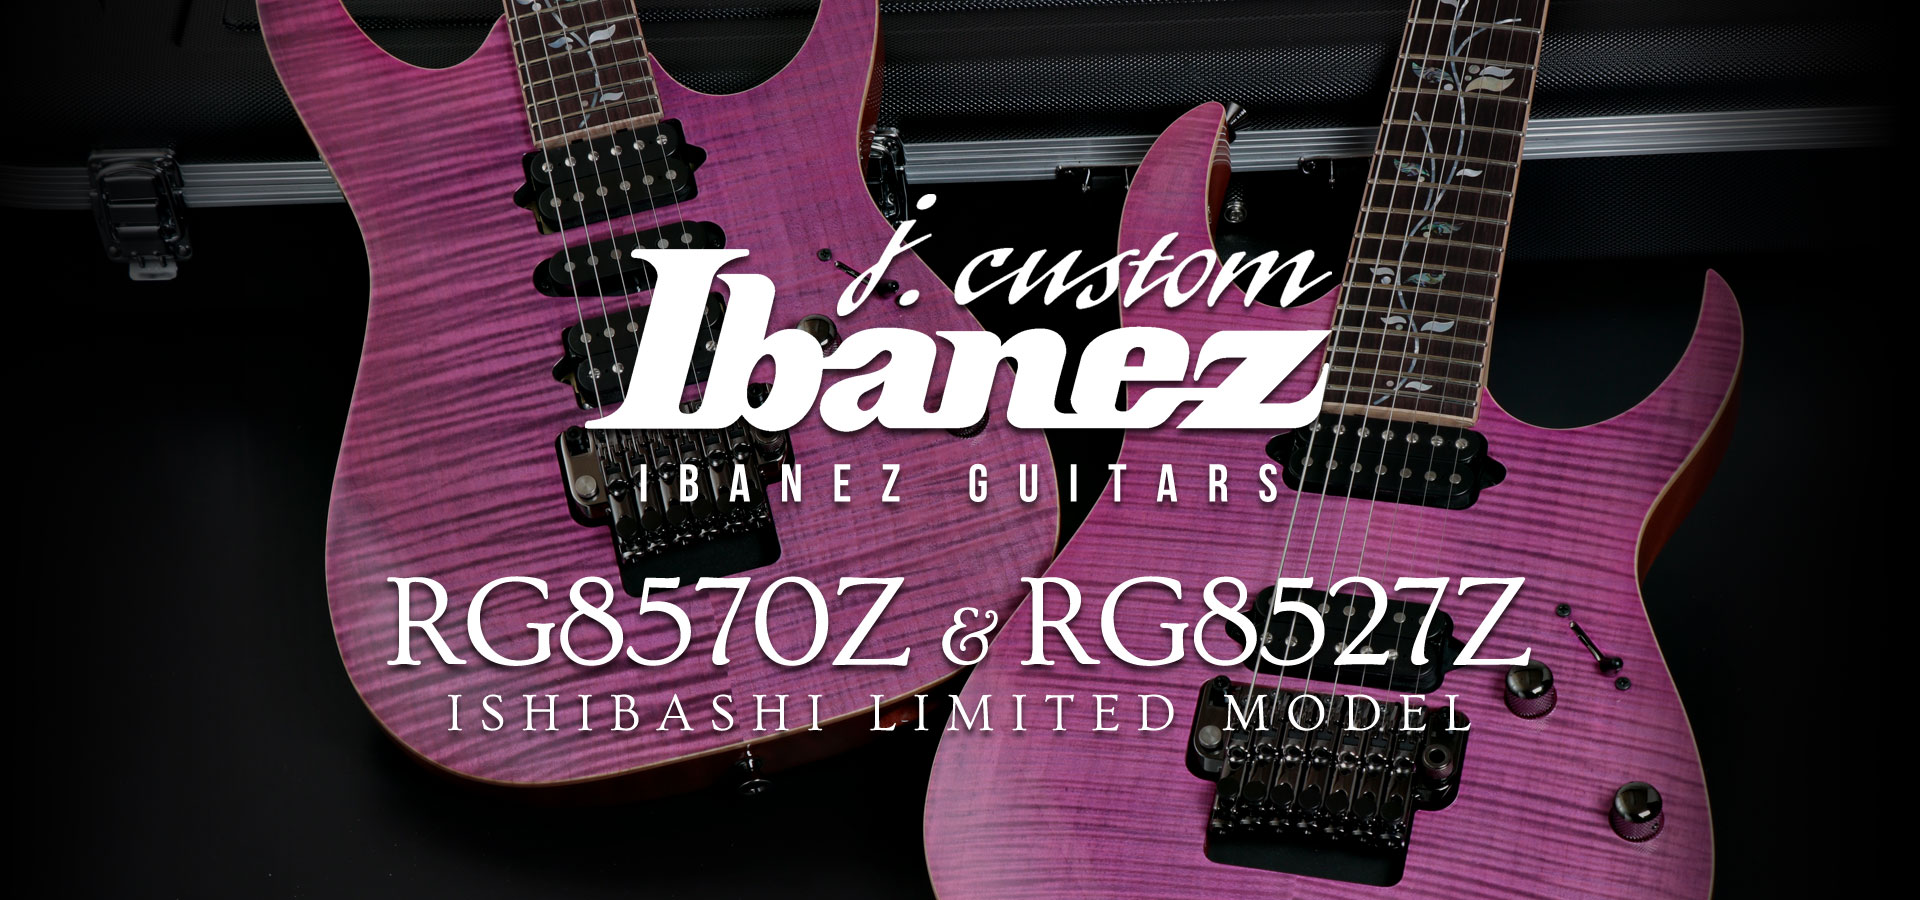 j.custom” の 2018年ラインナップにイシバシ楽器限定カラーモデルが登場！鮮やかな「ロードナイト・ピンク」がIbanez最高峰モデルを彩ります！